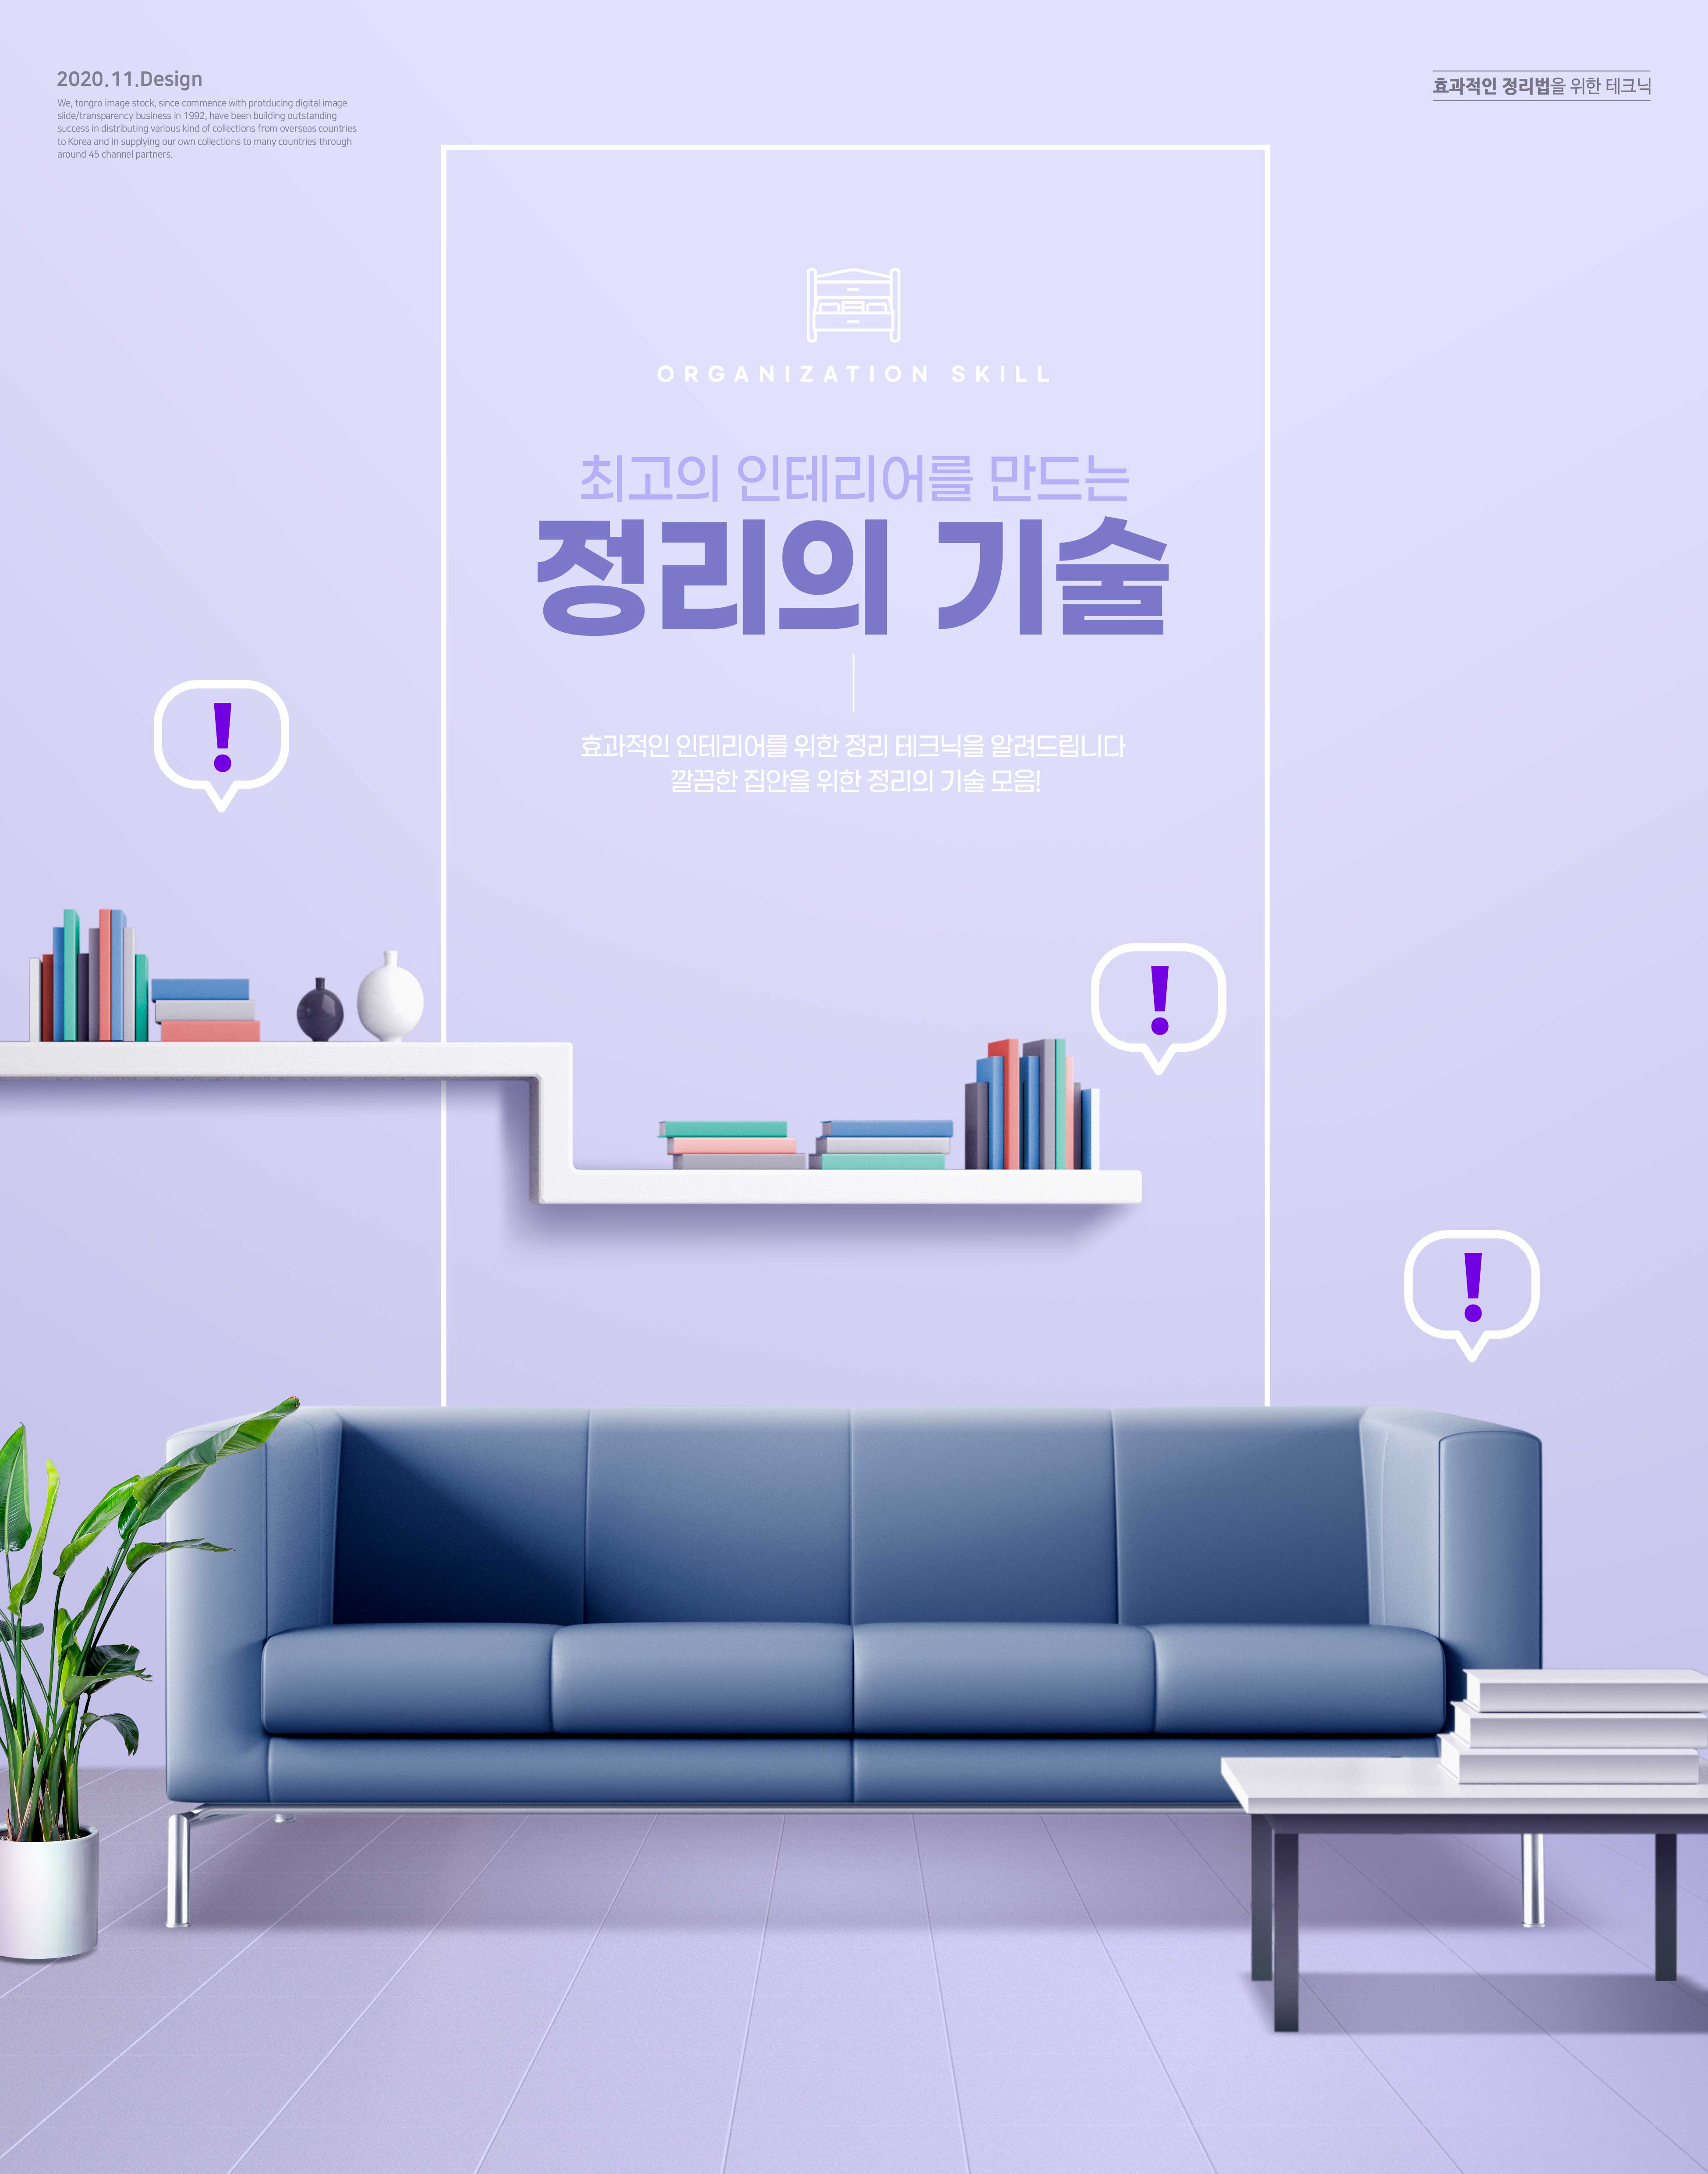 室内设计主题家居布局海报设计韩国素材设计素材模板